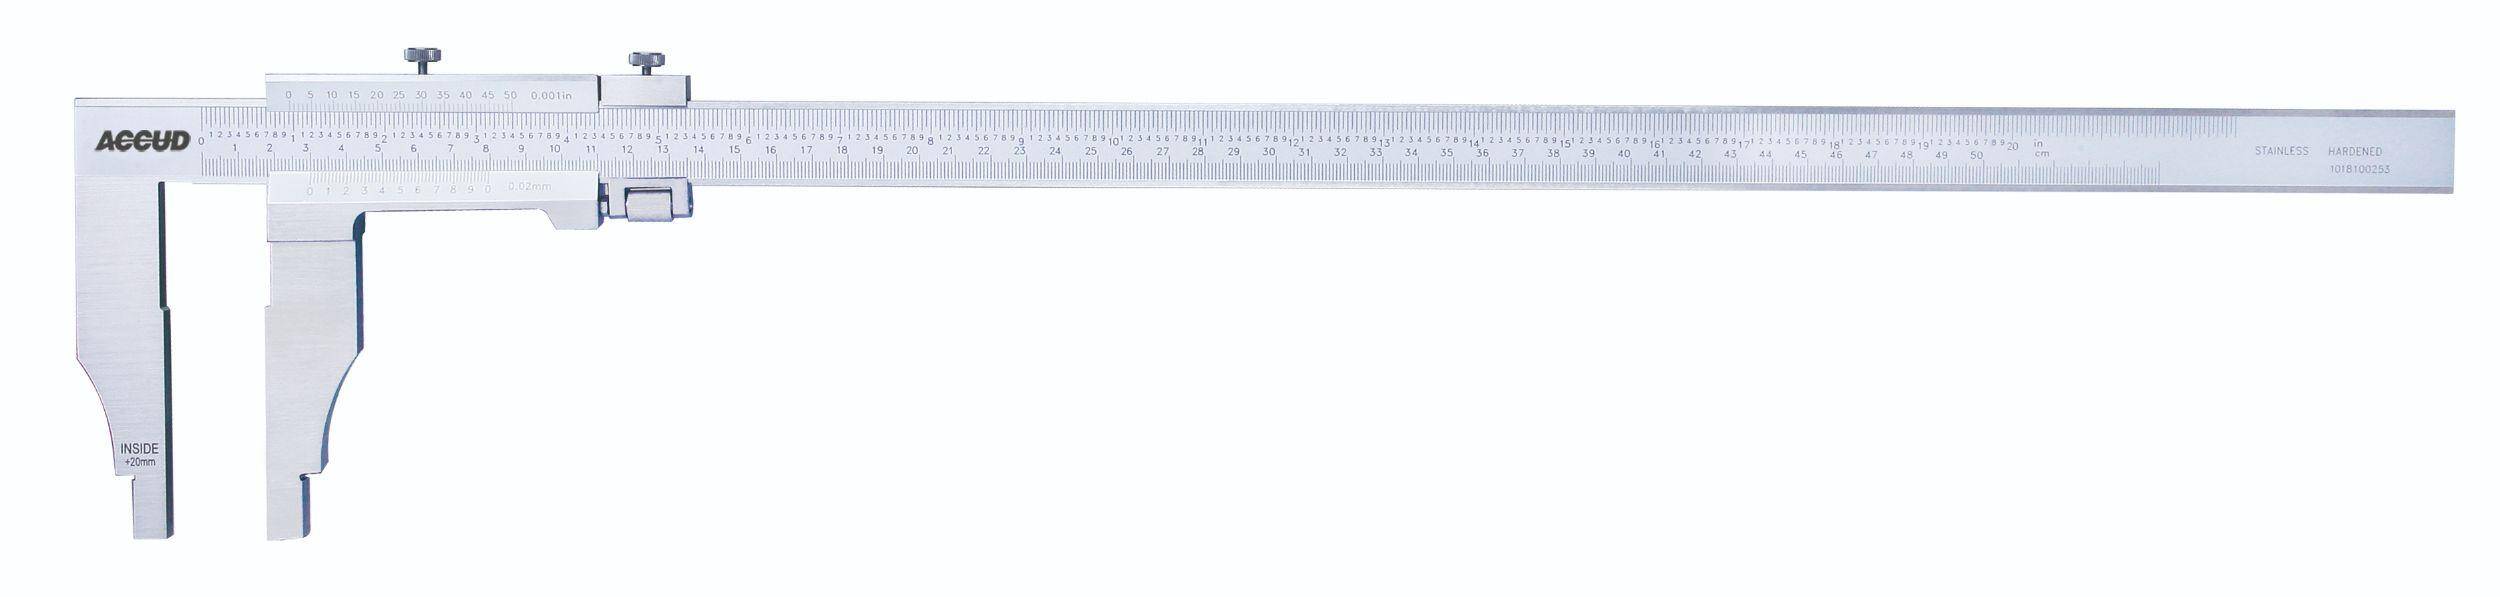 ACCUD suwmiarka analogowa 600/0,05 mm jednostronna długość szczęk 100 mm 128-024-51 (Zdjęcie 1)